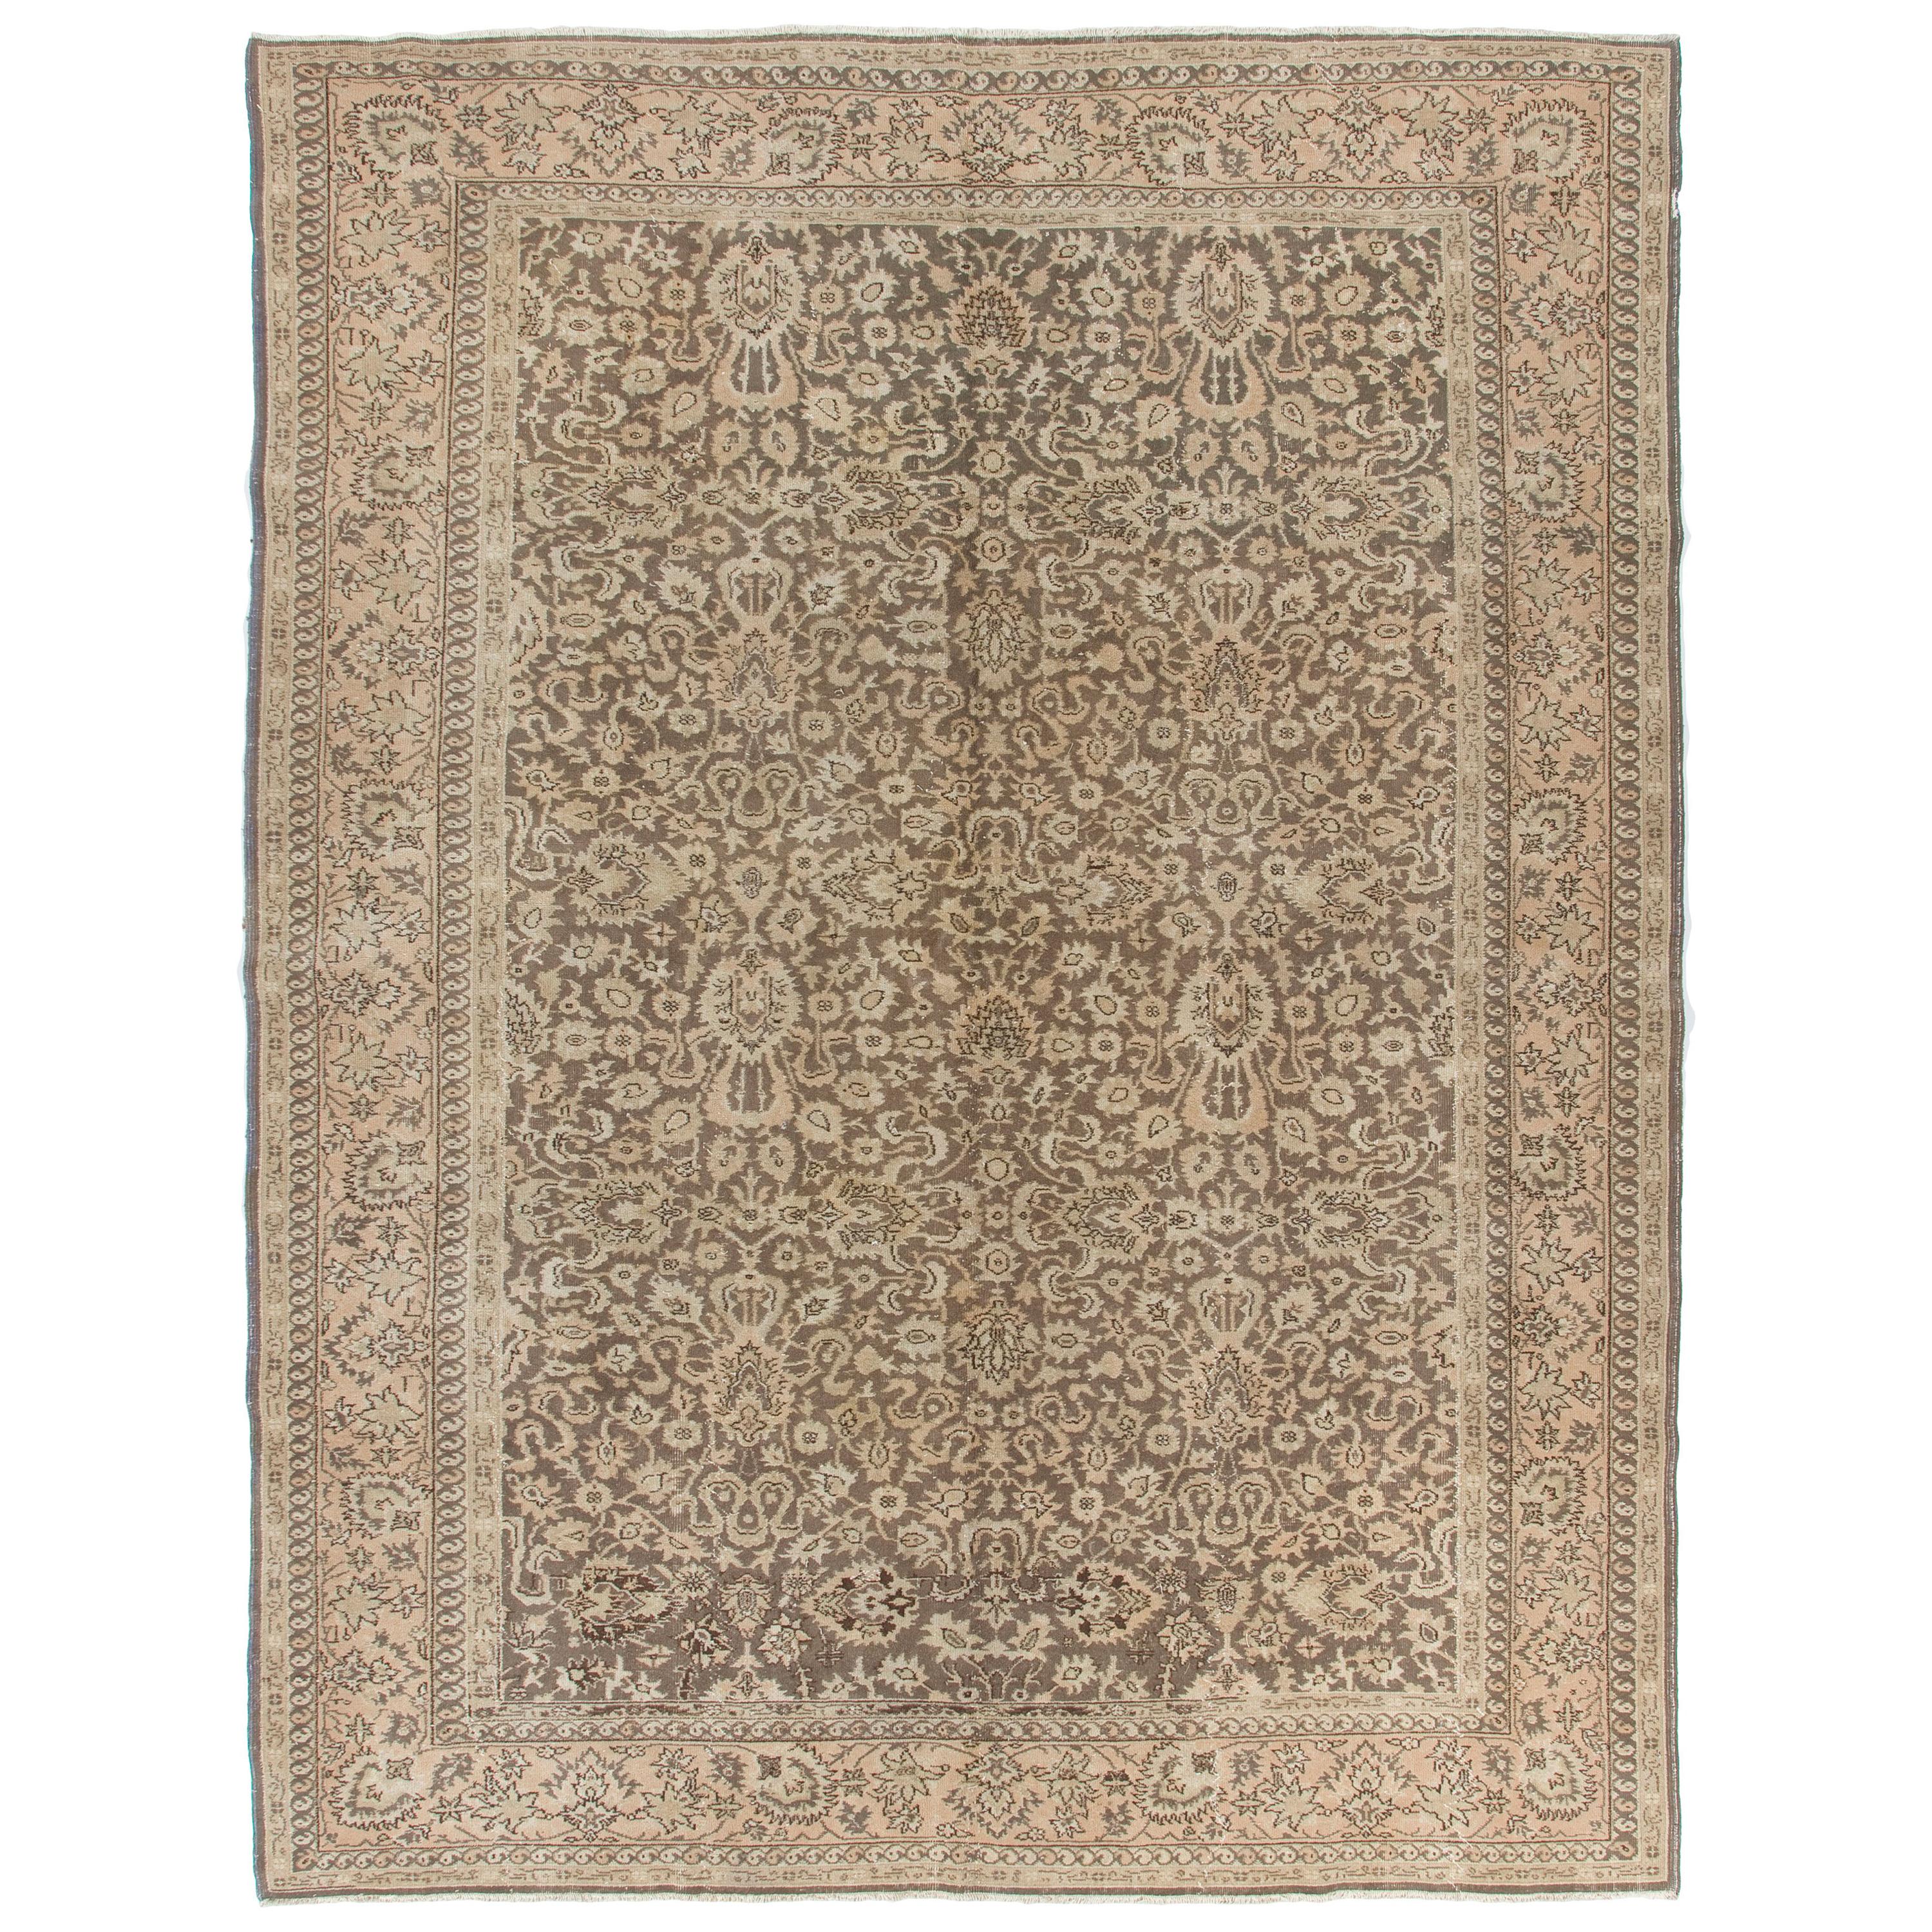 9.2x12 Ft Einzigartiger türkischer Sivas-Teppich in weichem Taupe-Braun und Beige-Farben